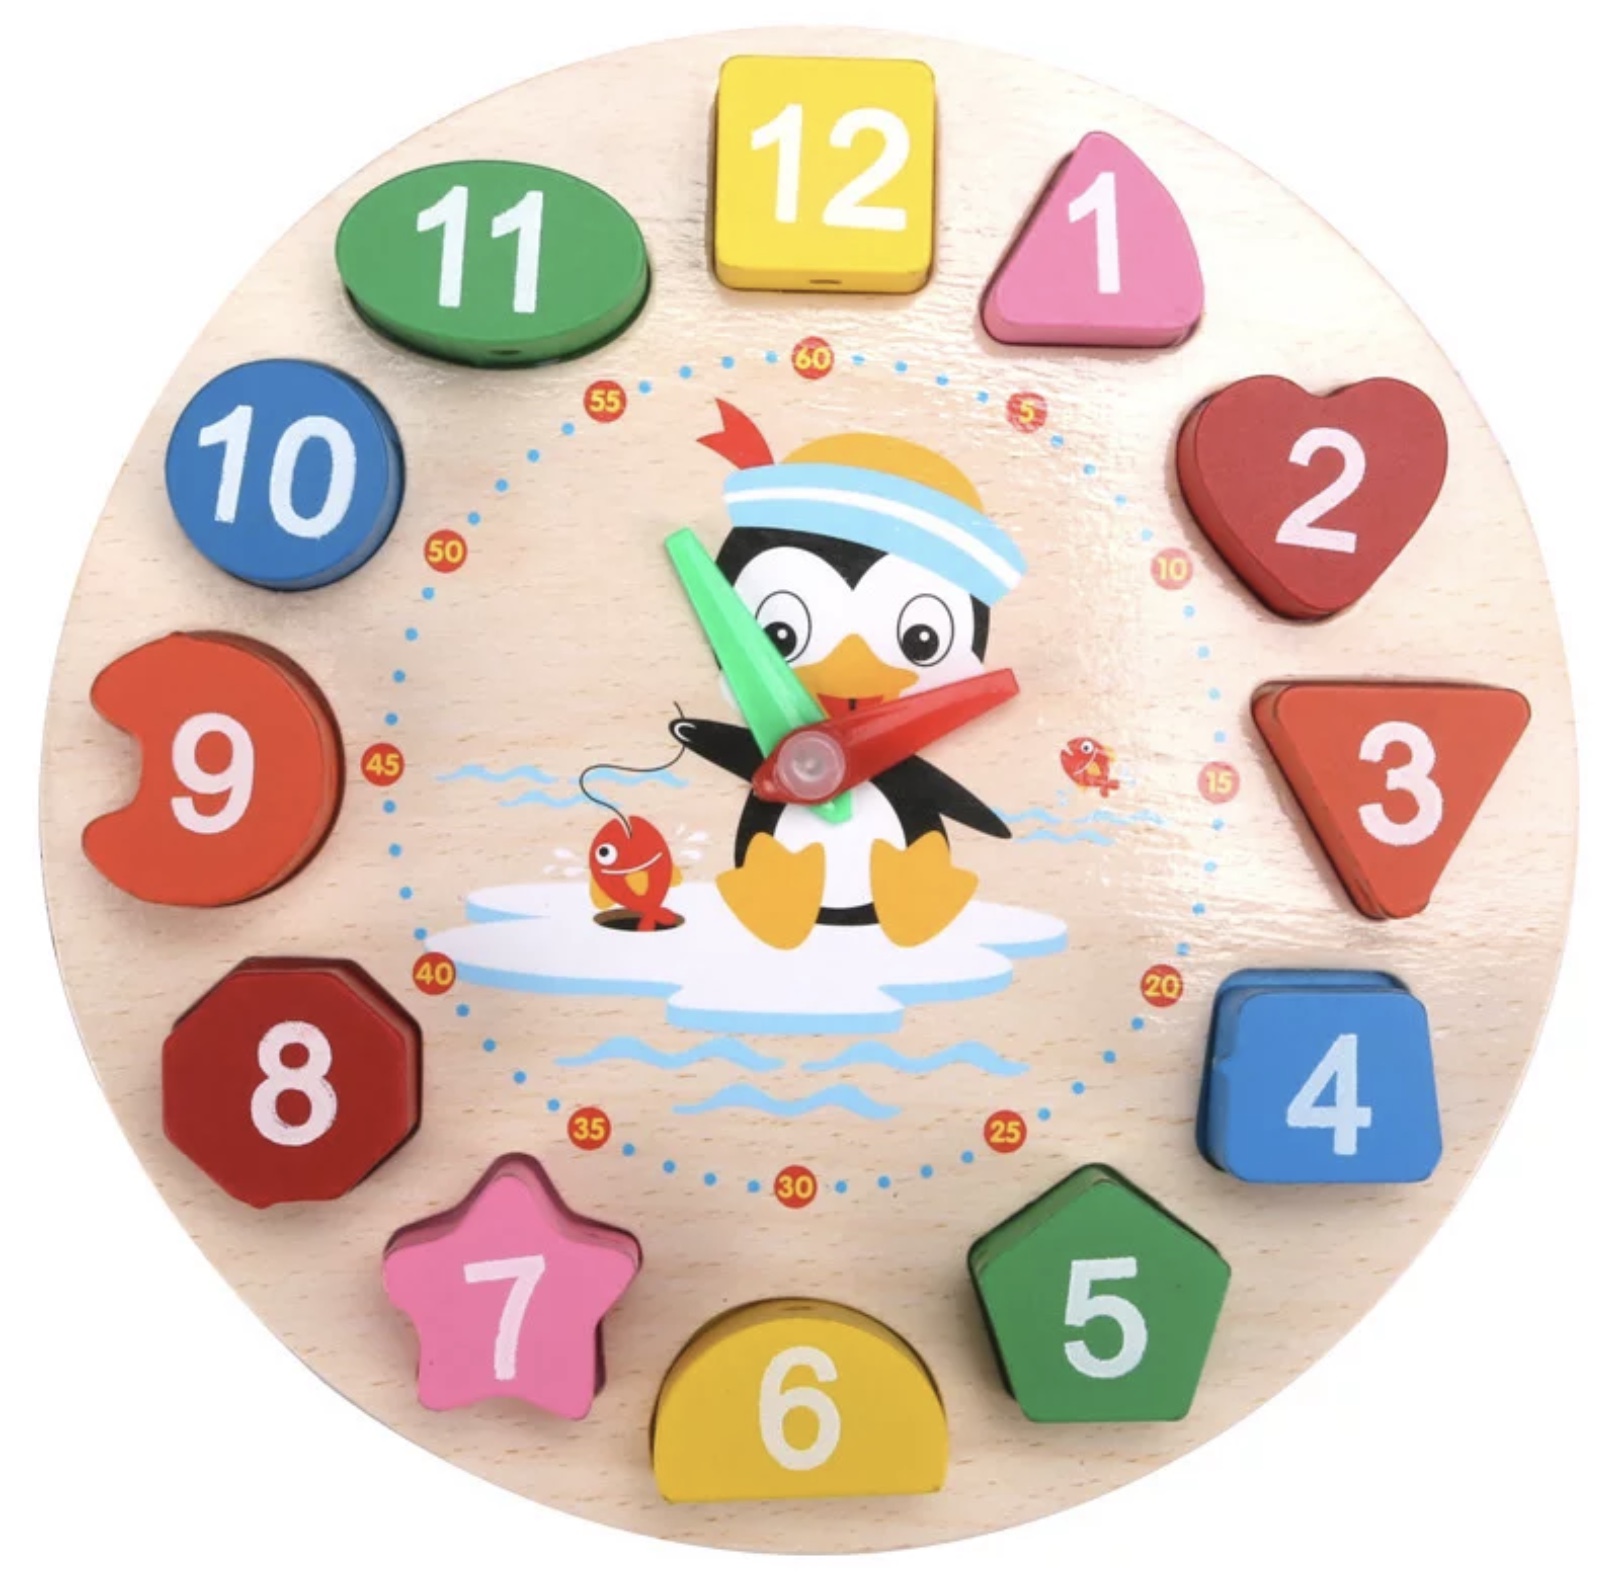 Ceas din lemn cu numere care se pot detașa de ceas un joc cu care copiii pot învăța într-un mod distractiv numerele și formele geometrice jocul conține și snur  care se pot introduce numerele